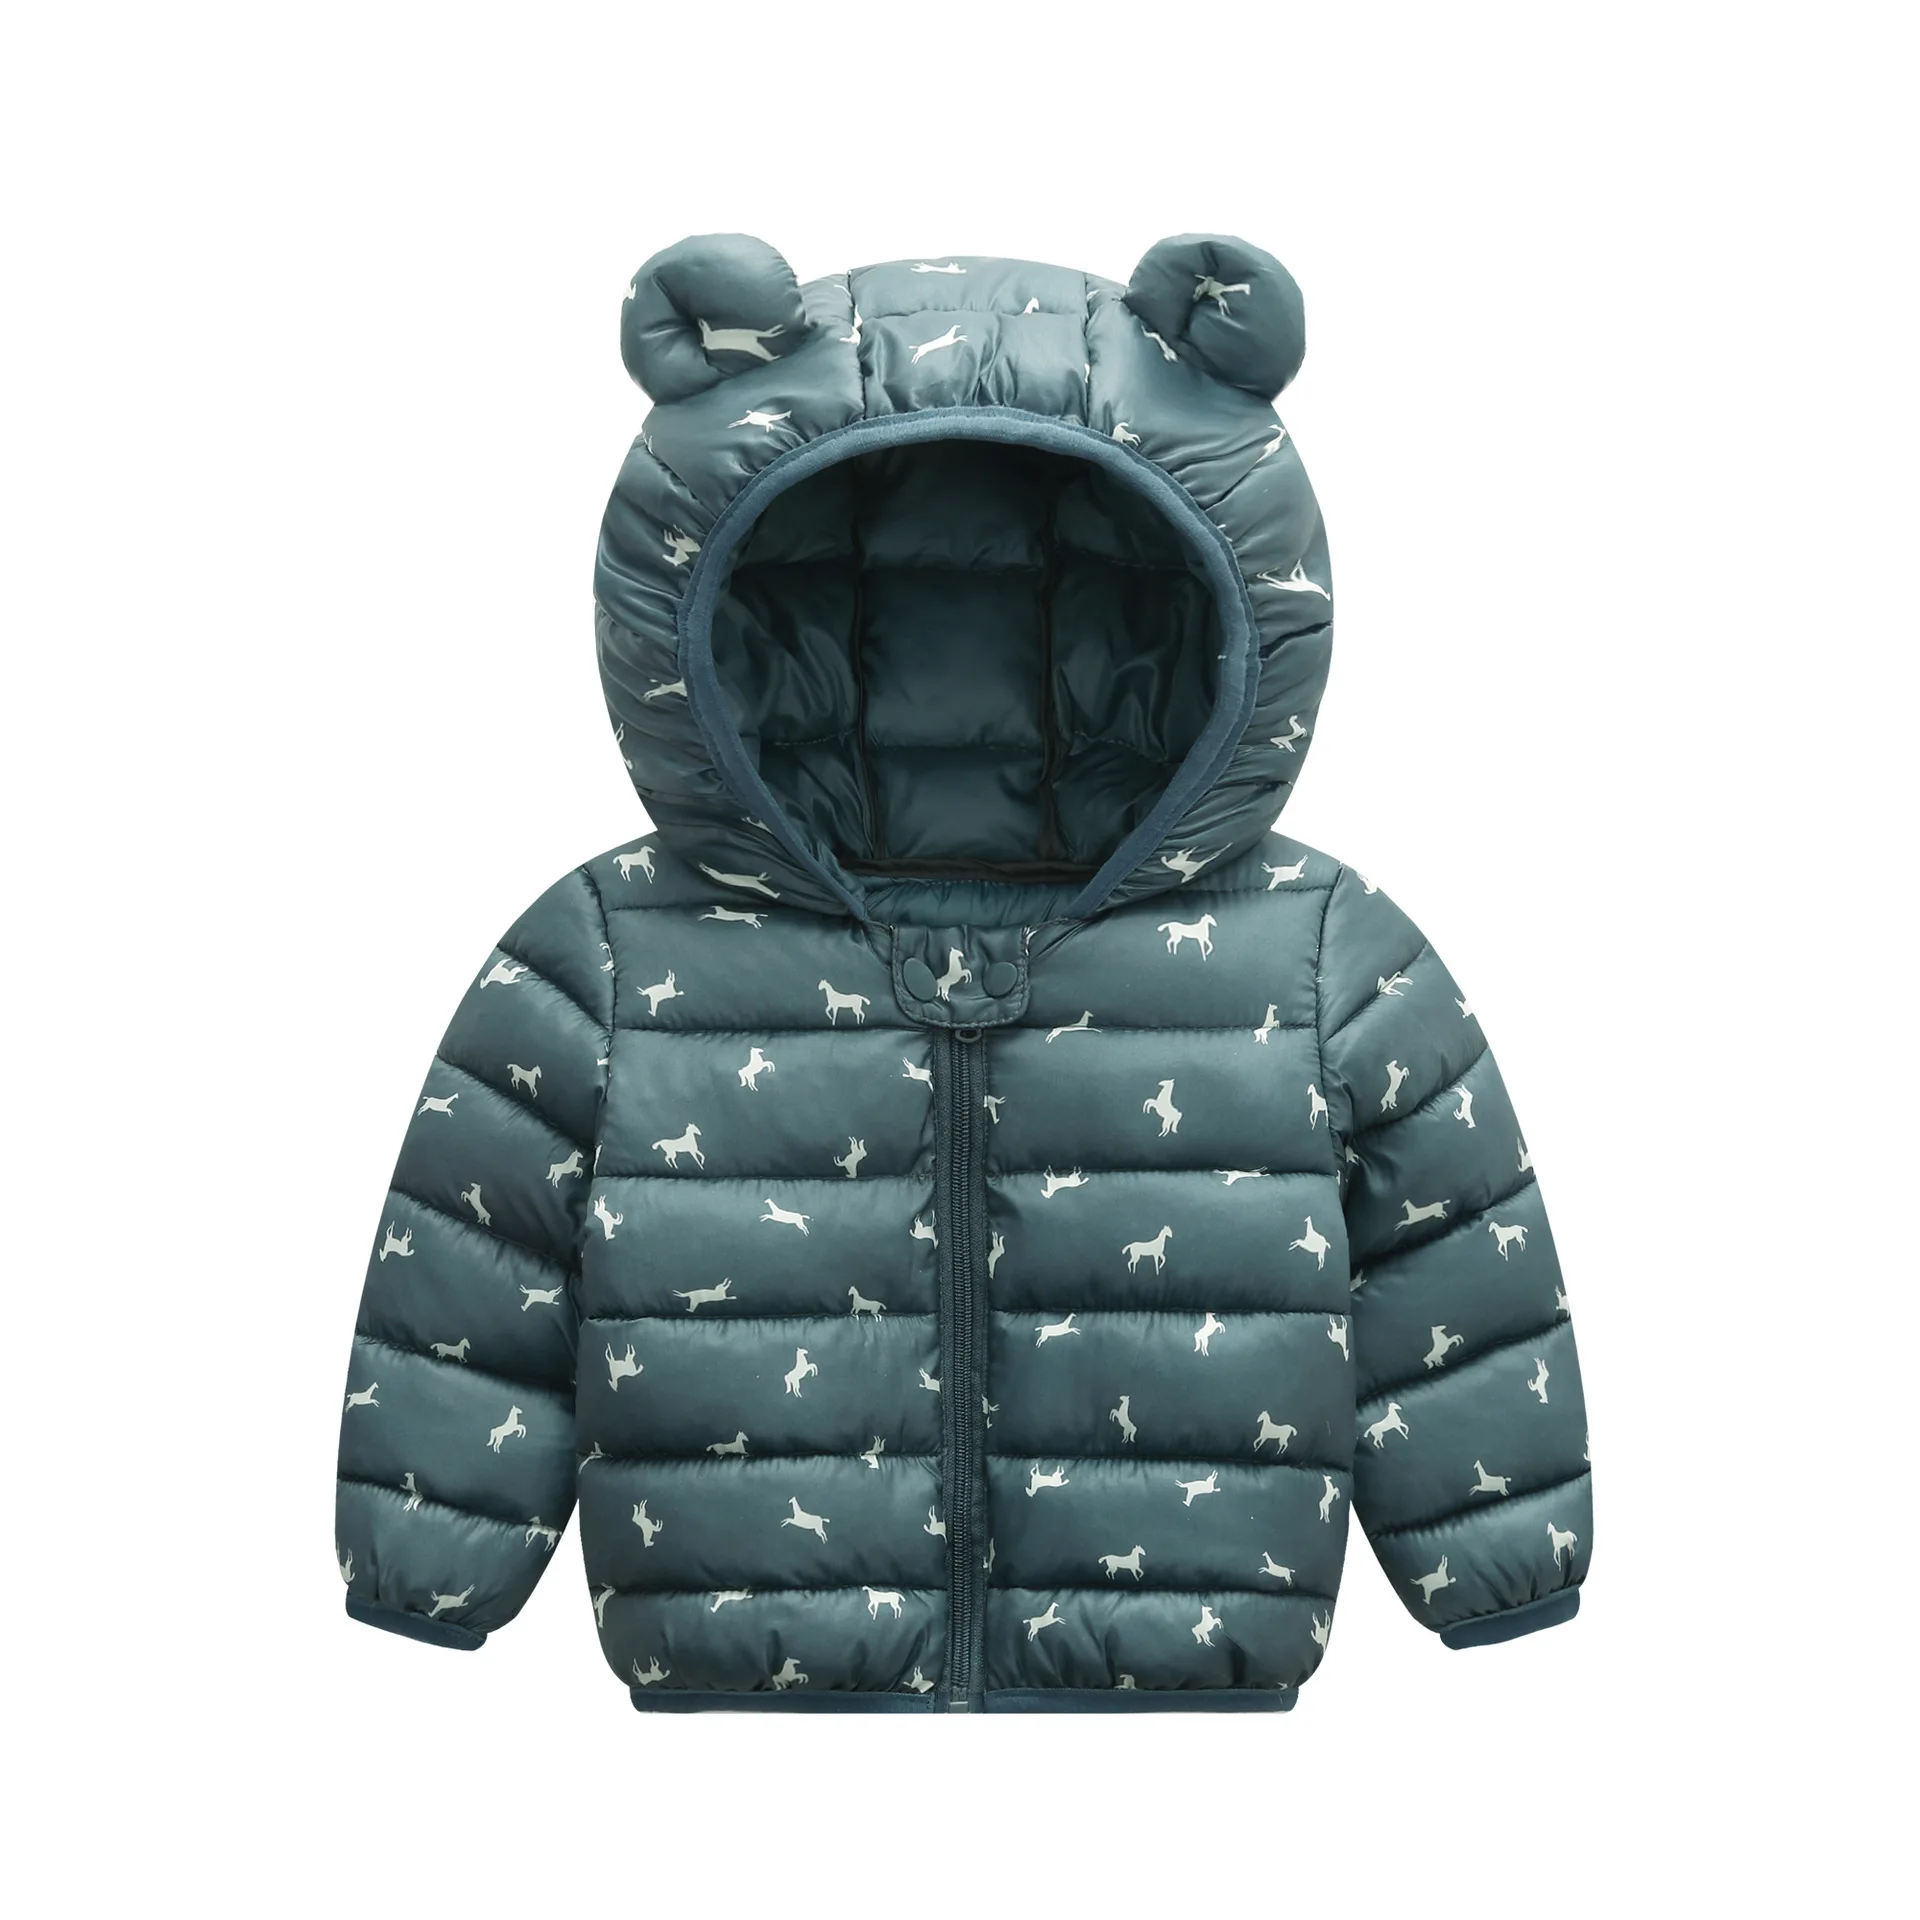 Eastern Corridor-EU Winter Down Coats for Kids Baby Boys Girls Light Puffer Padded Jacket Cute Cartoon Bear Hoods Infant Outerwear 